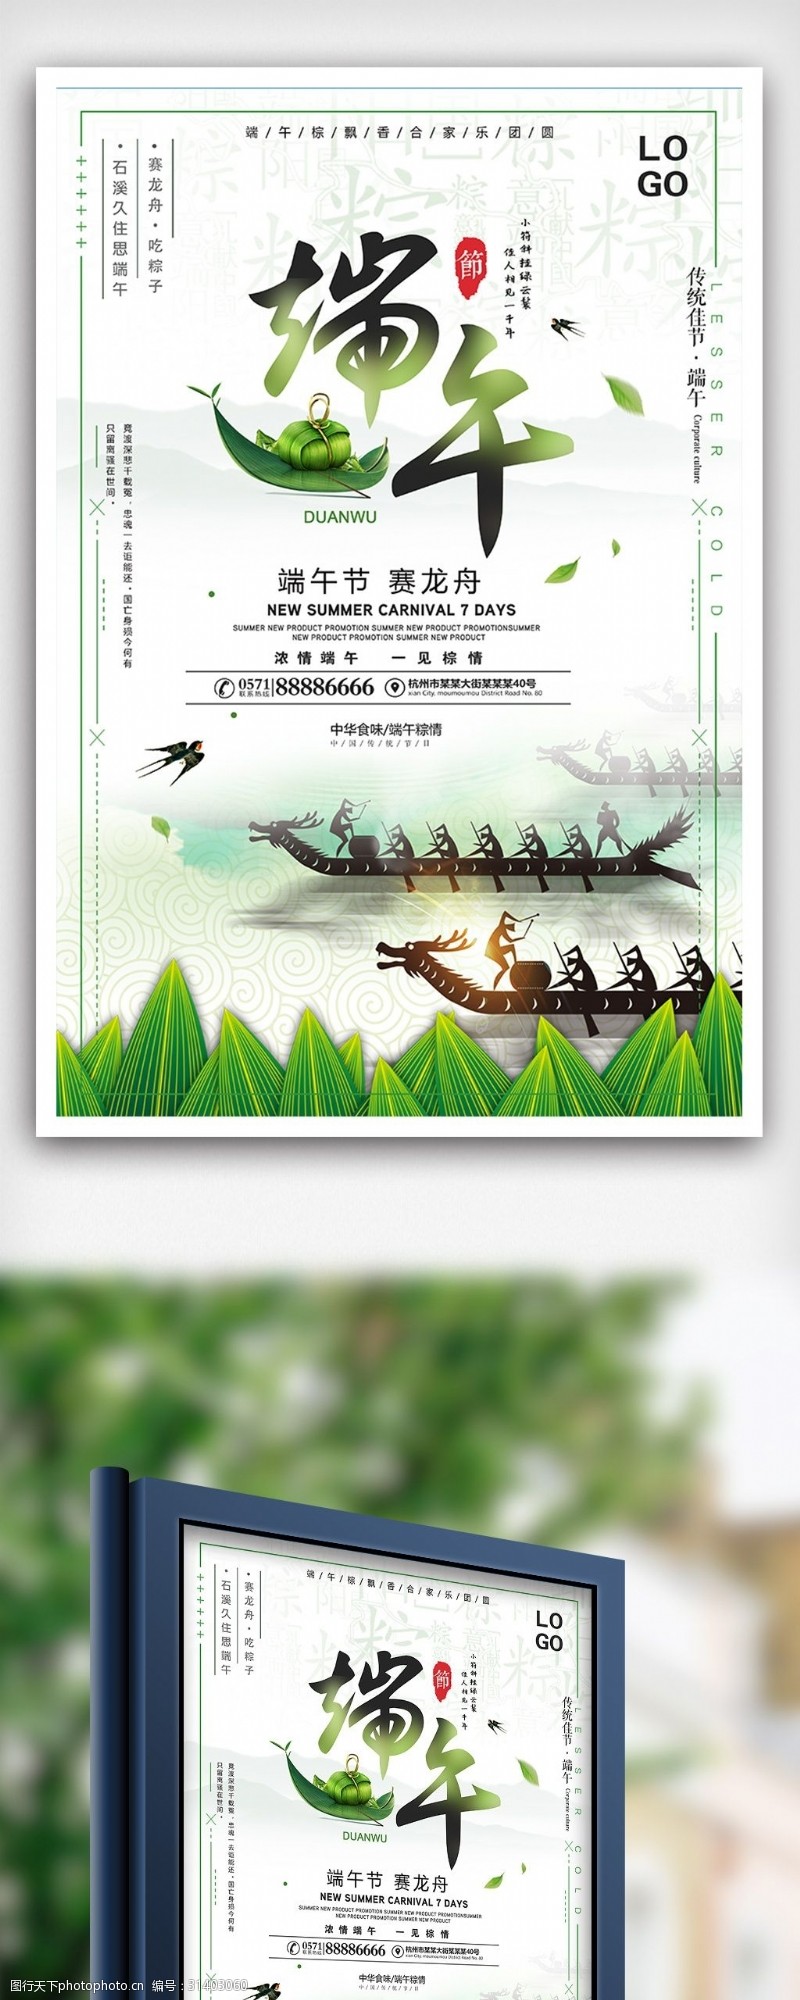 淘宝海报免费下载24节气端午节赛龙舟节日海报